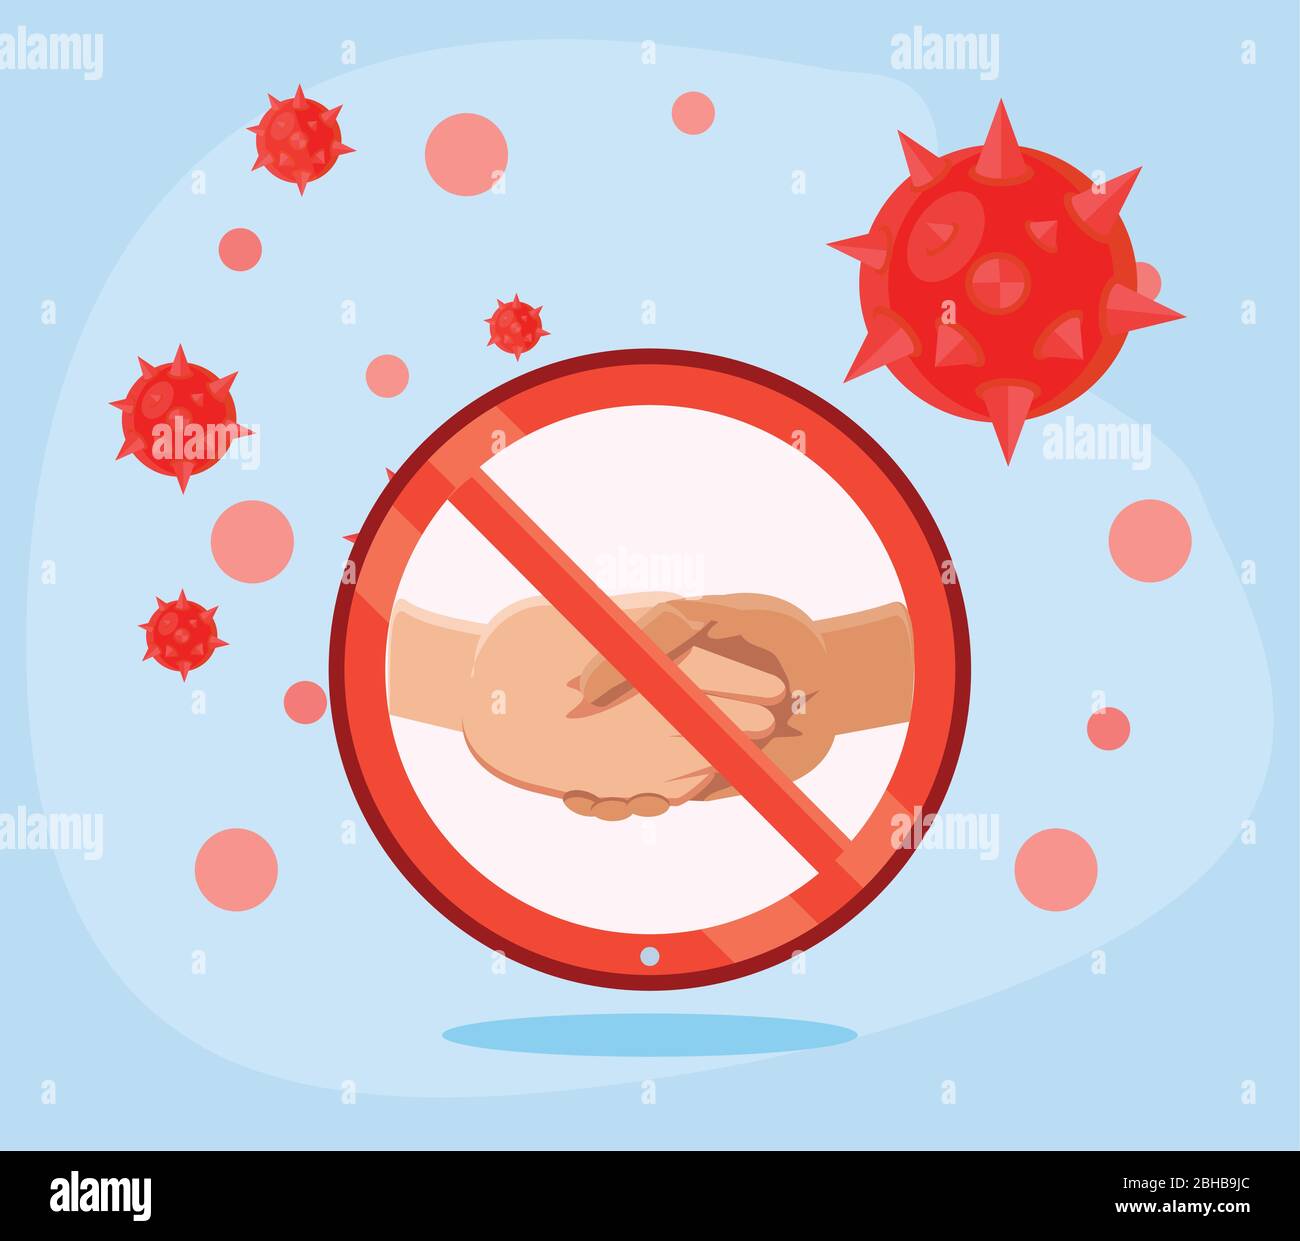 no handshake for virus prevention vector illustration design Stock Vector